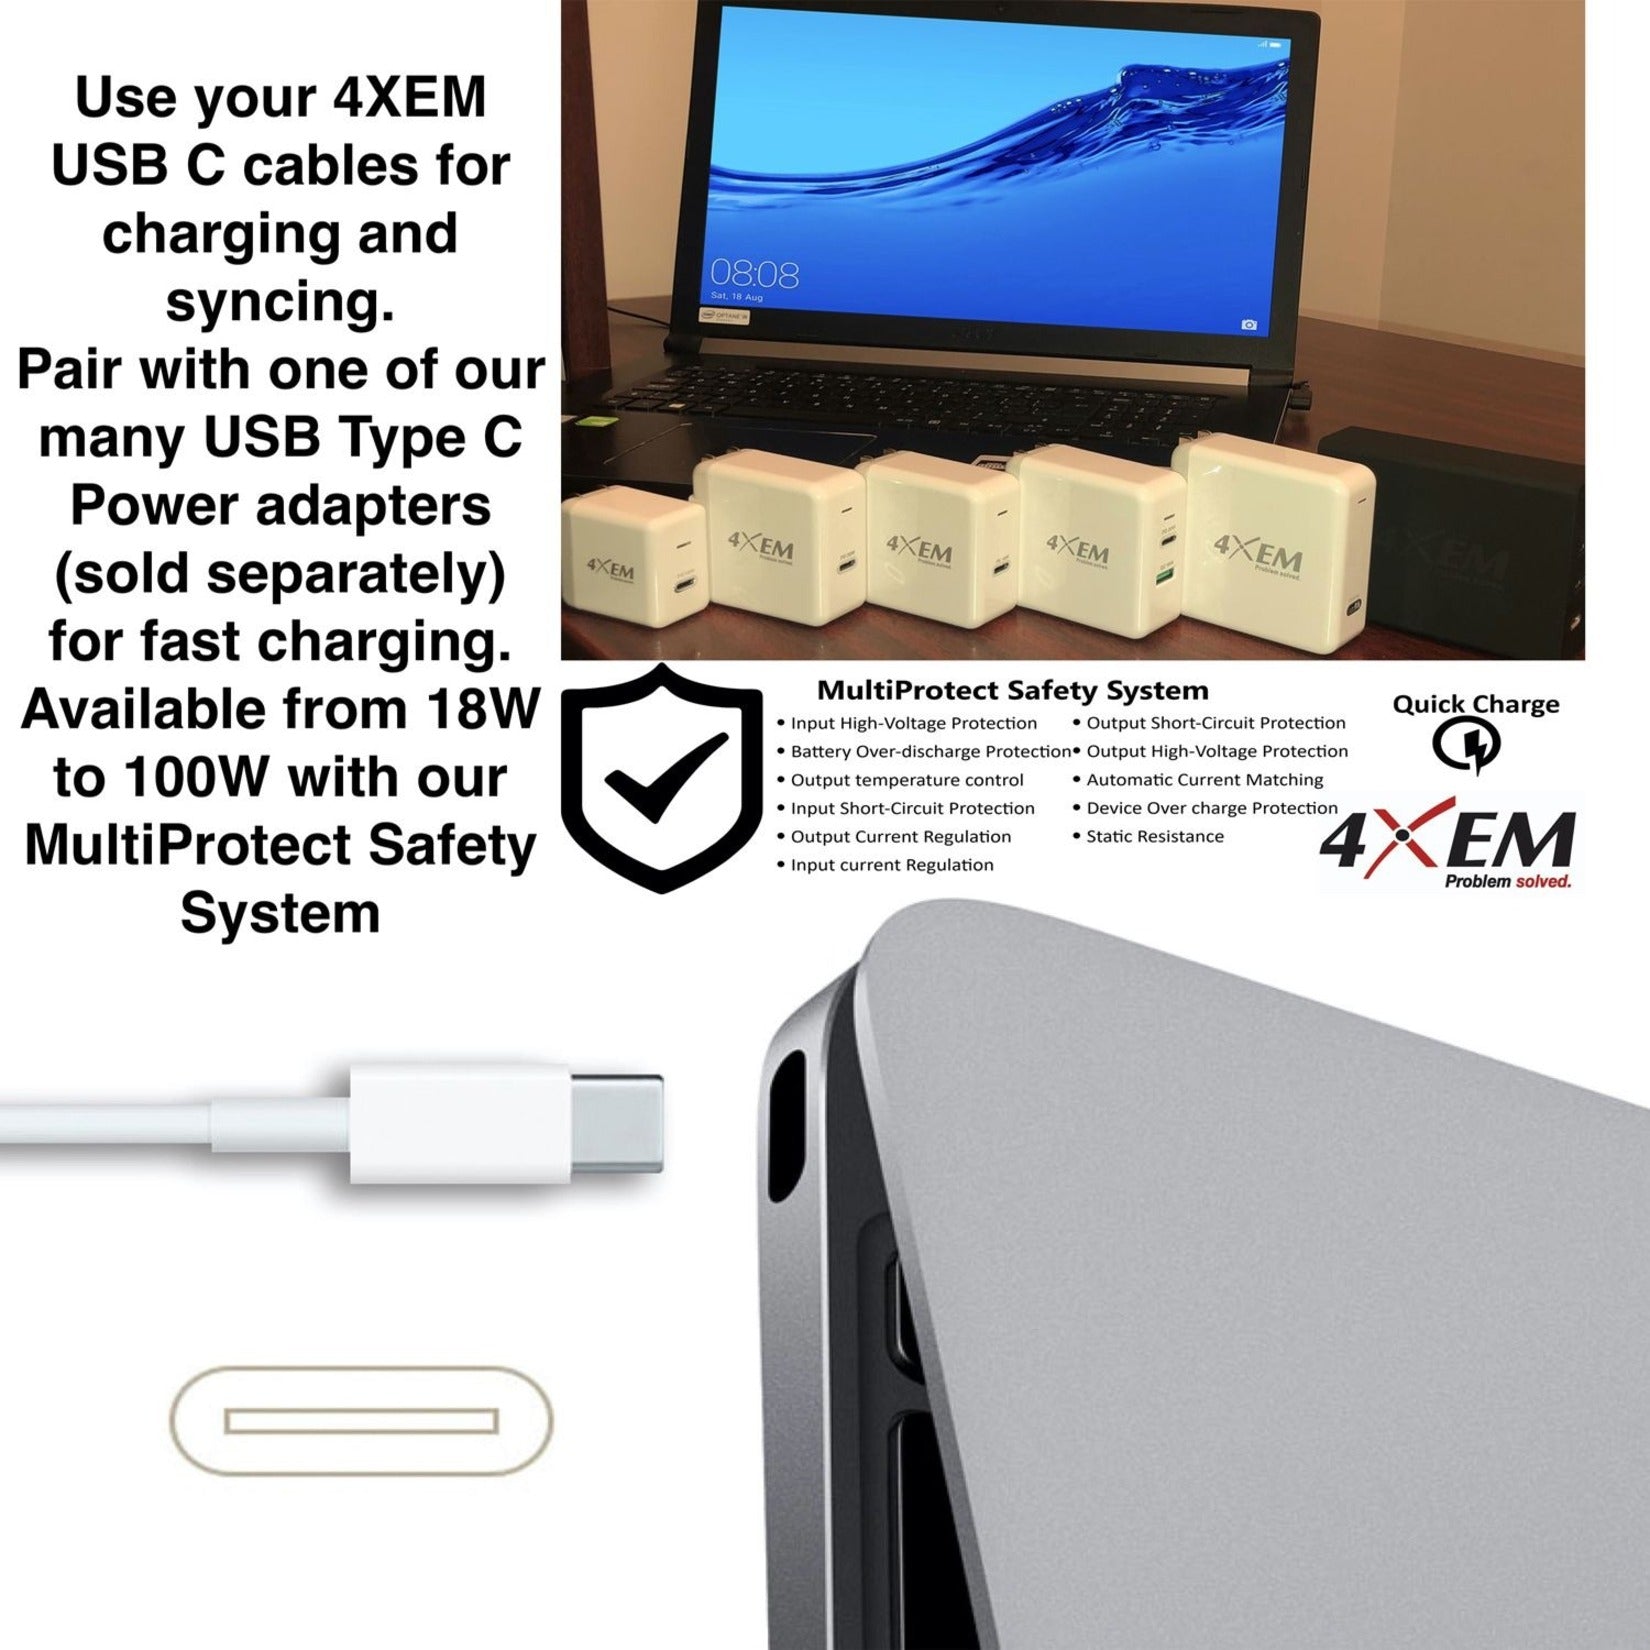 4XEM 4XUSBCC31G23W 3FT/1M USB-C To USB-C Cable M/M USB 3.1 Gen 2 10GBPS, Reversible Charging, E-marker Chip, White